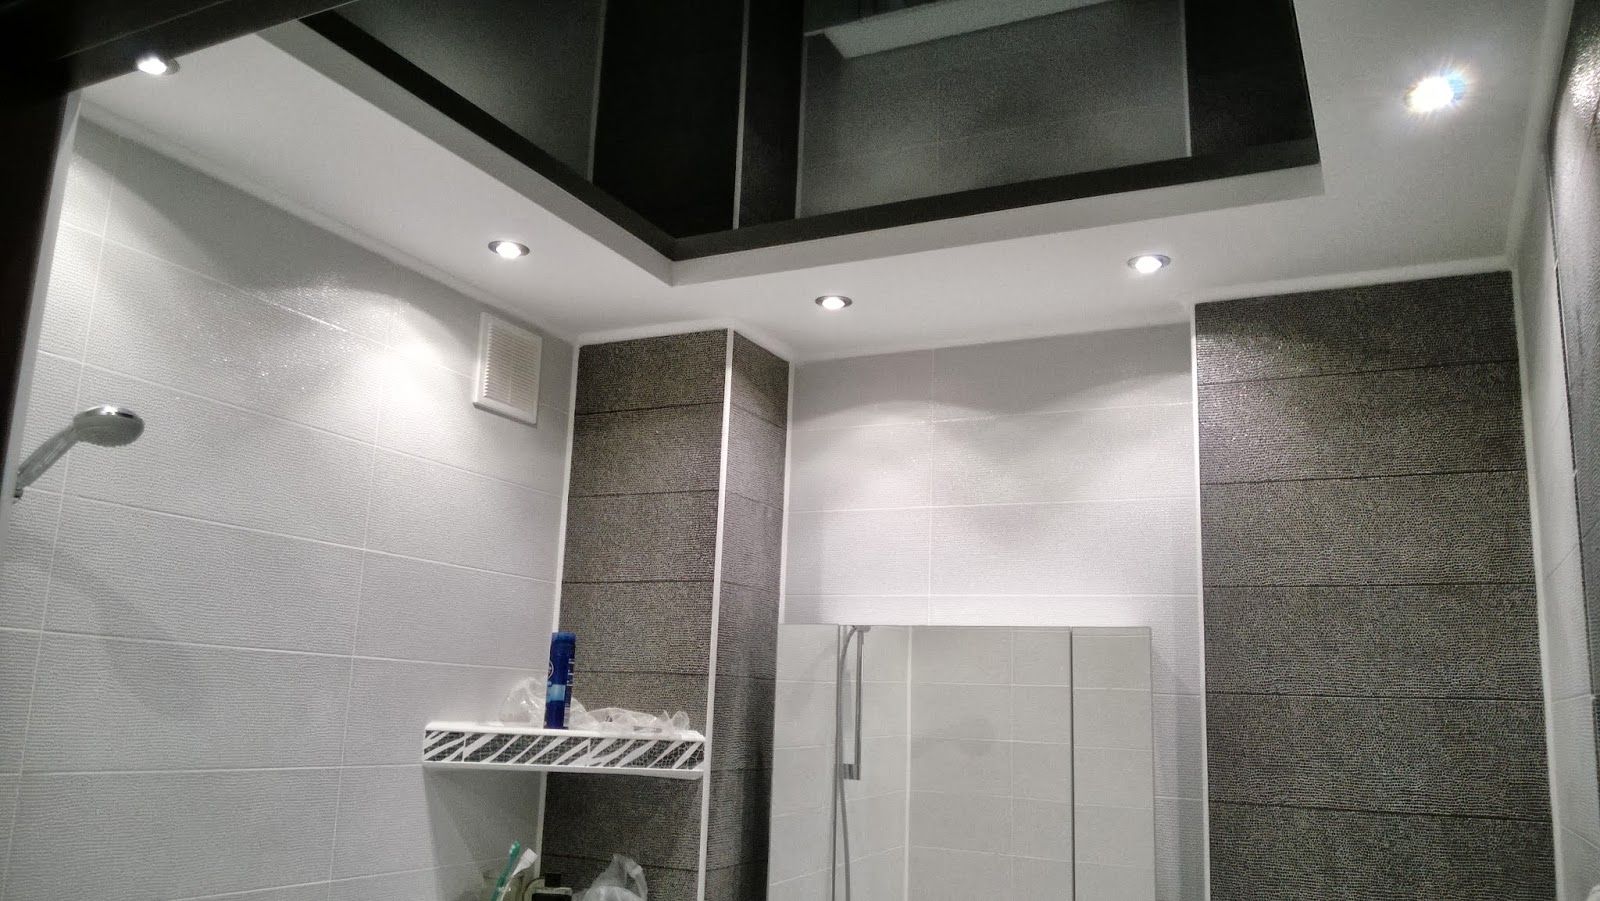 Потолок двухуровневый в ванной: Двухуровневый потолок с фотопечатью в ванной